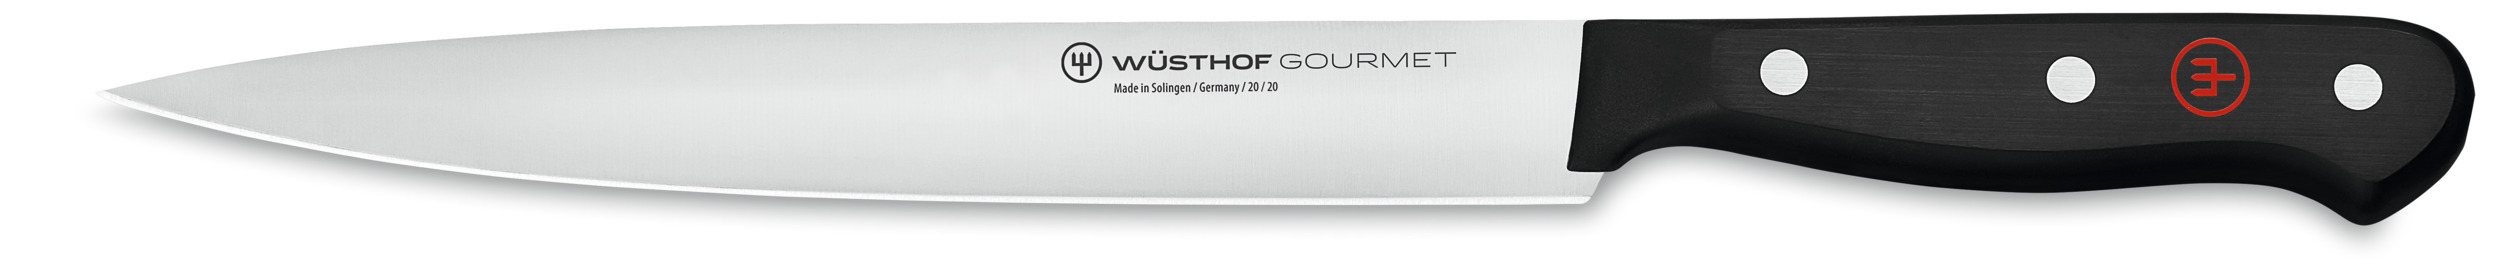 Wüsthof Gourmet Schinkenmesser 20 cm